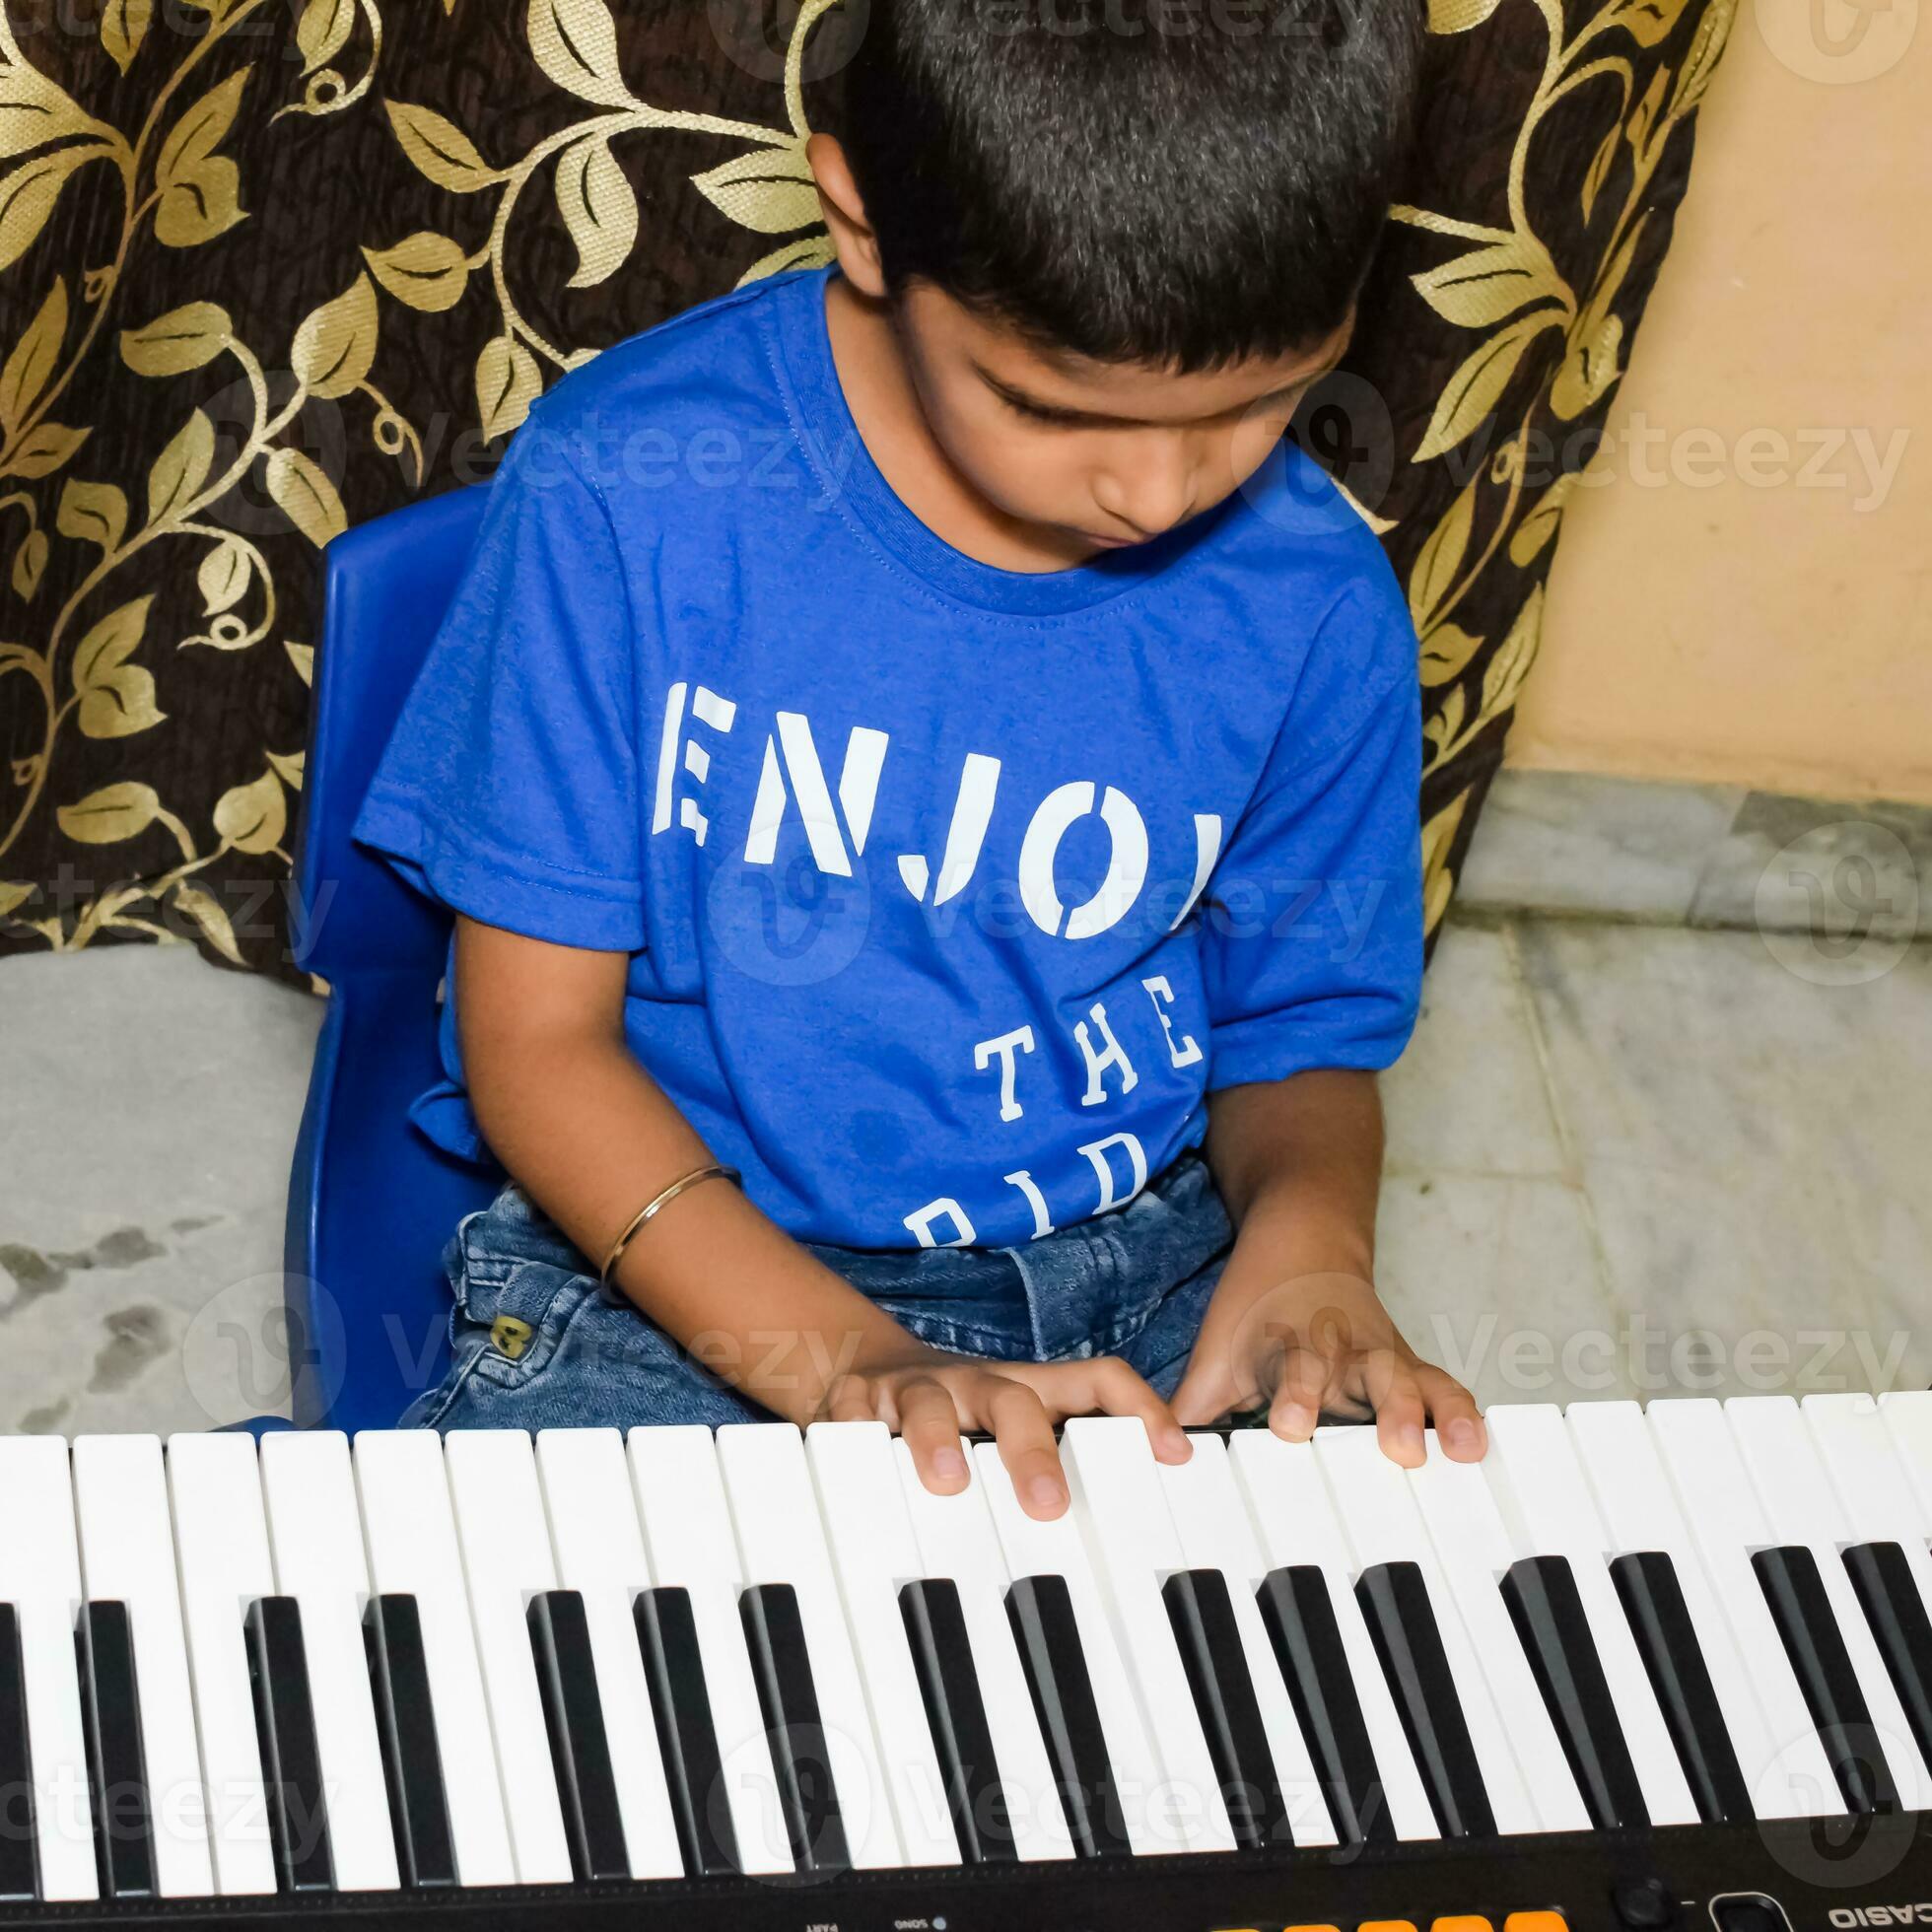 https://static.vecteezy.com/ti/fotos-kostenlos/p2/24677582-asiatisch-junge-spielen-das-synthesizer-oder-klavier-suss-wenig-kind-lernen-wie-zu-abspielen-klavier-kinder-hande-auf-das-tastatur-drinnen-foto.jpg